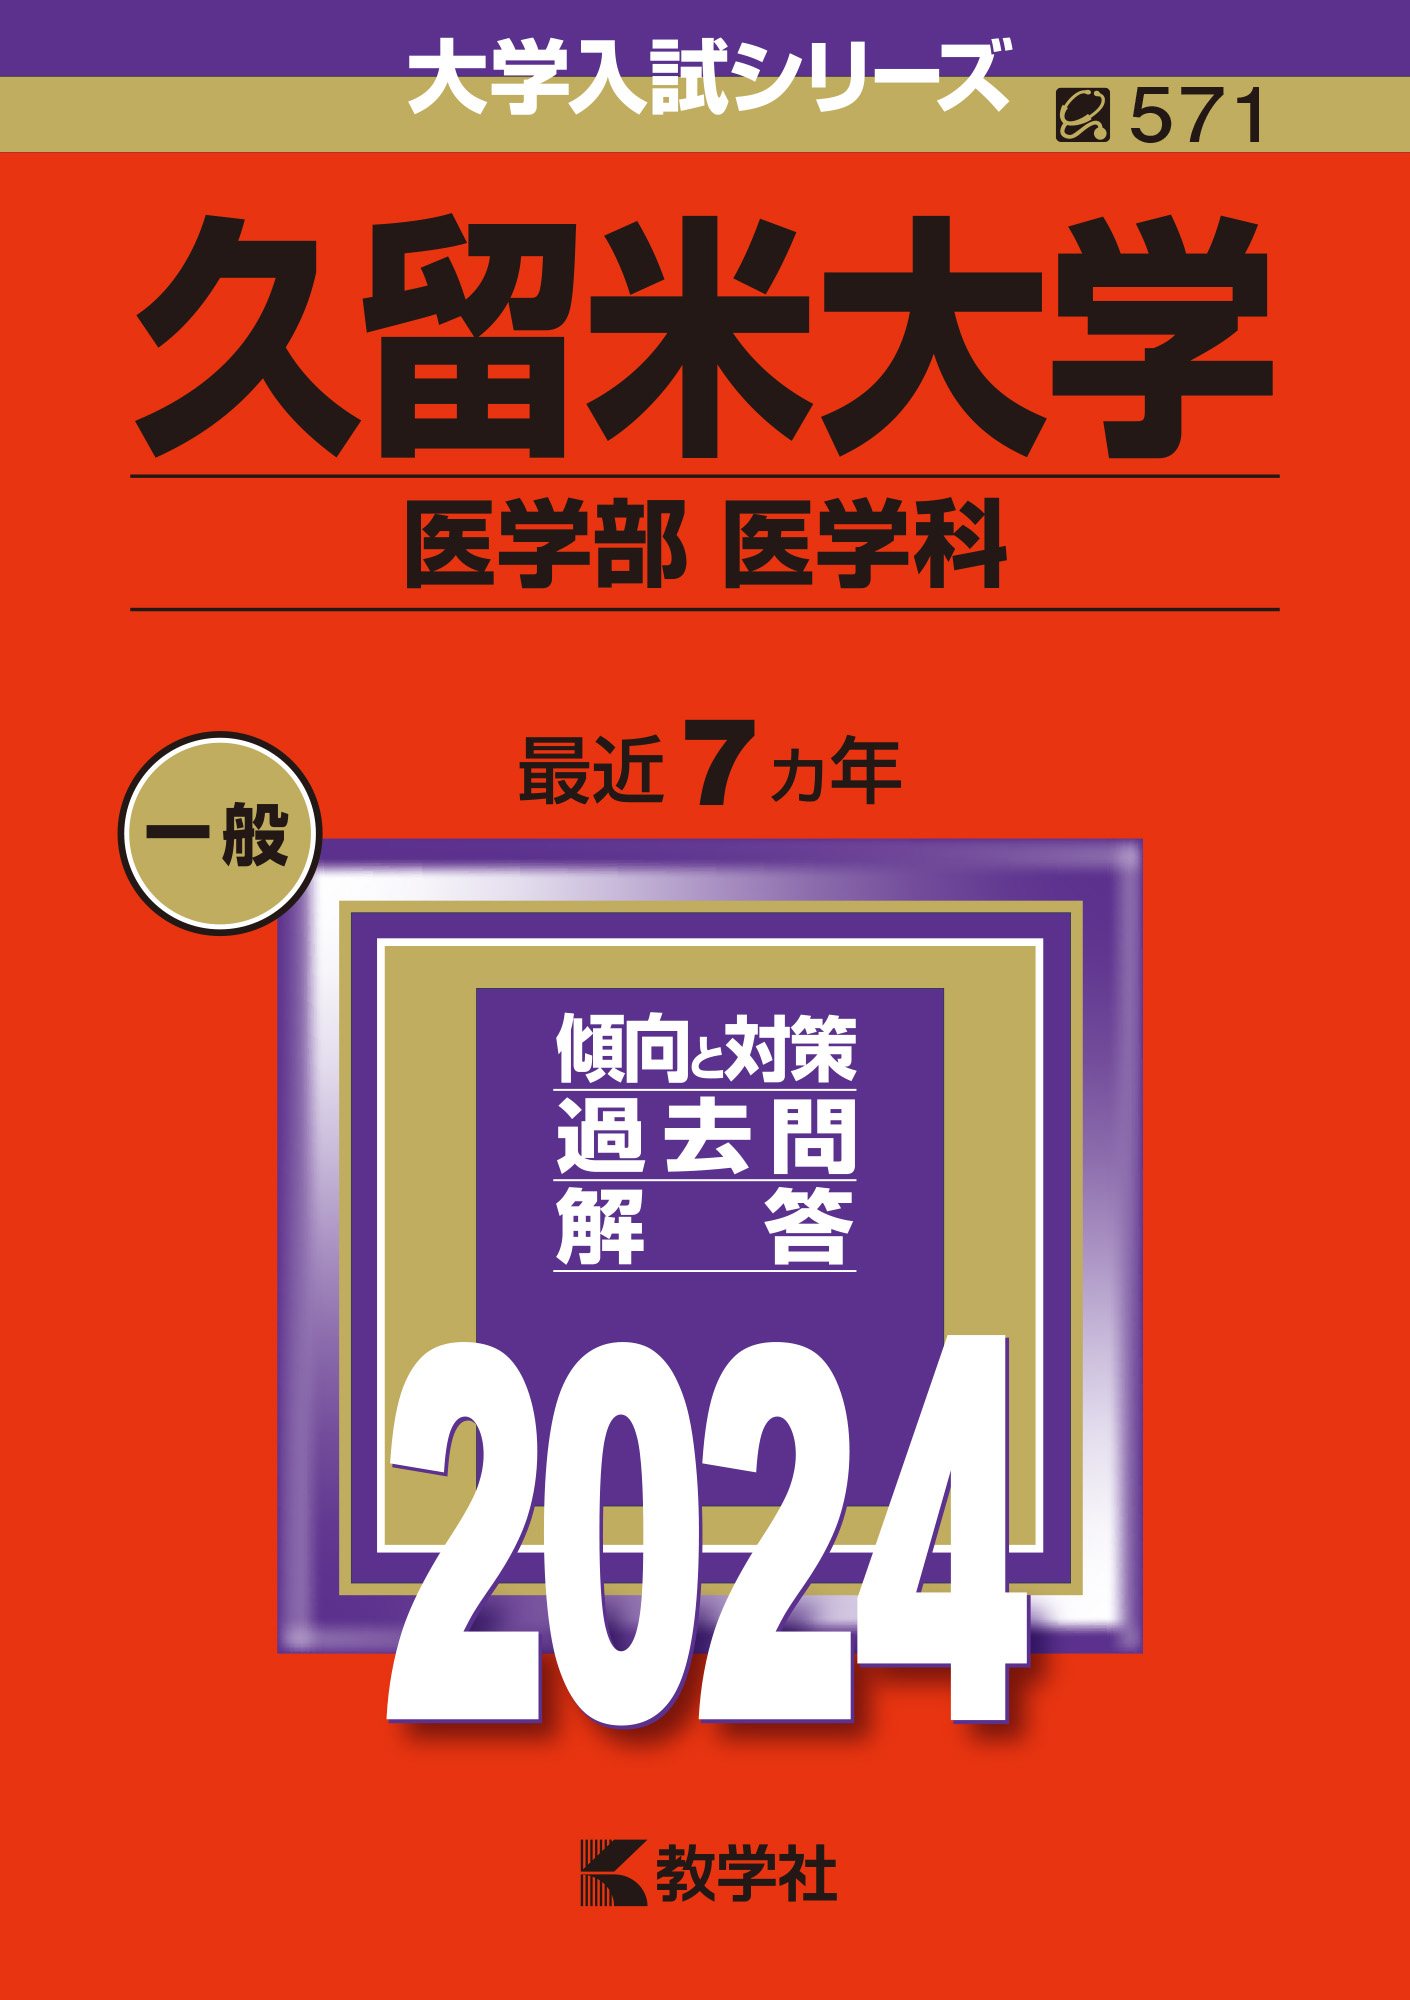 大阪学院大学高等学校 2020年度受験用 赤本 229 (高校別入試対策シリーズ)